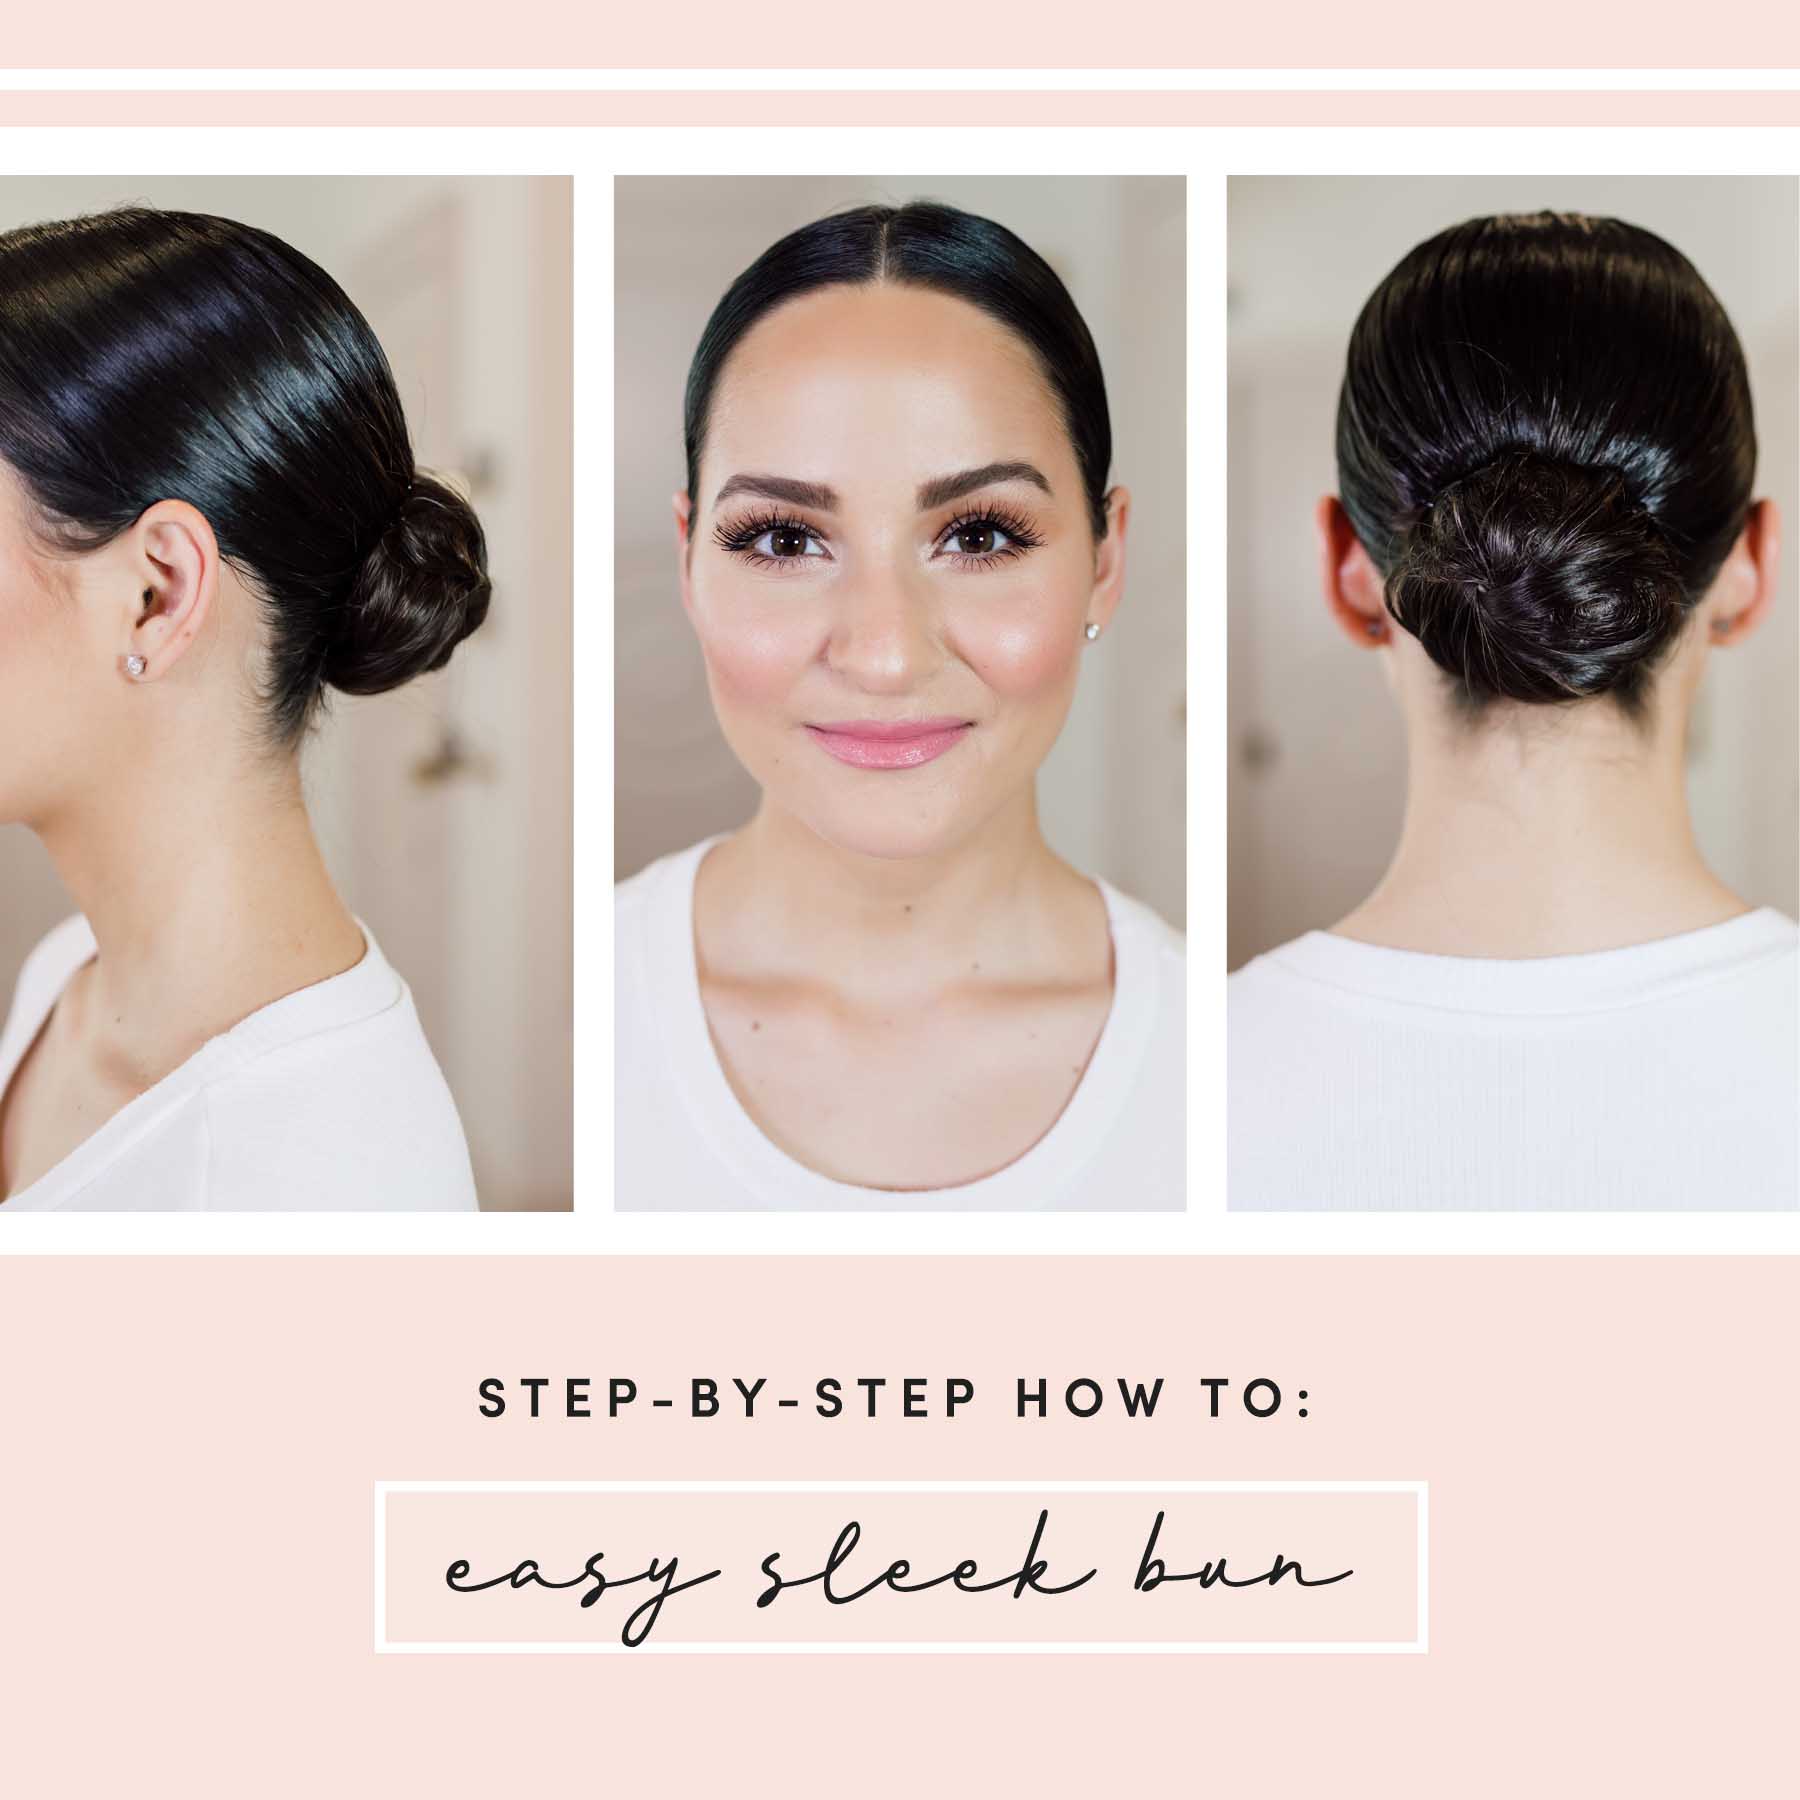 How To: Style Your Hair into a Sleek Bun | Fancy Face Inc.